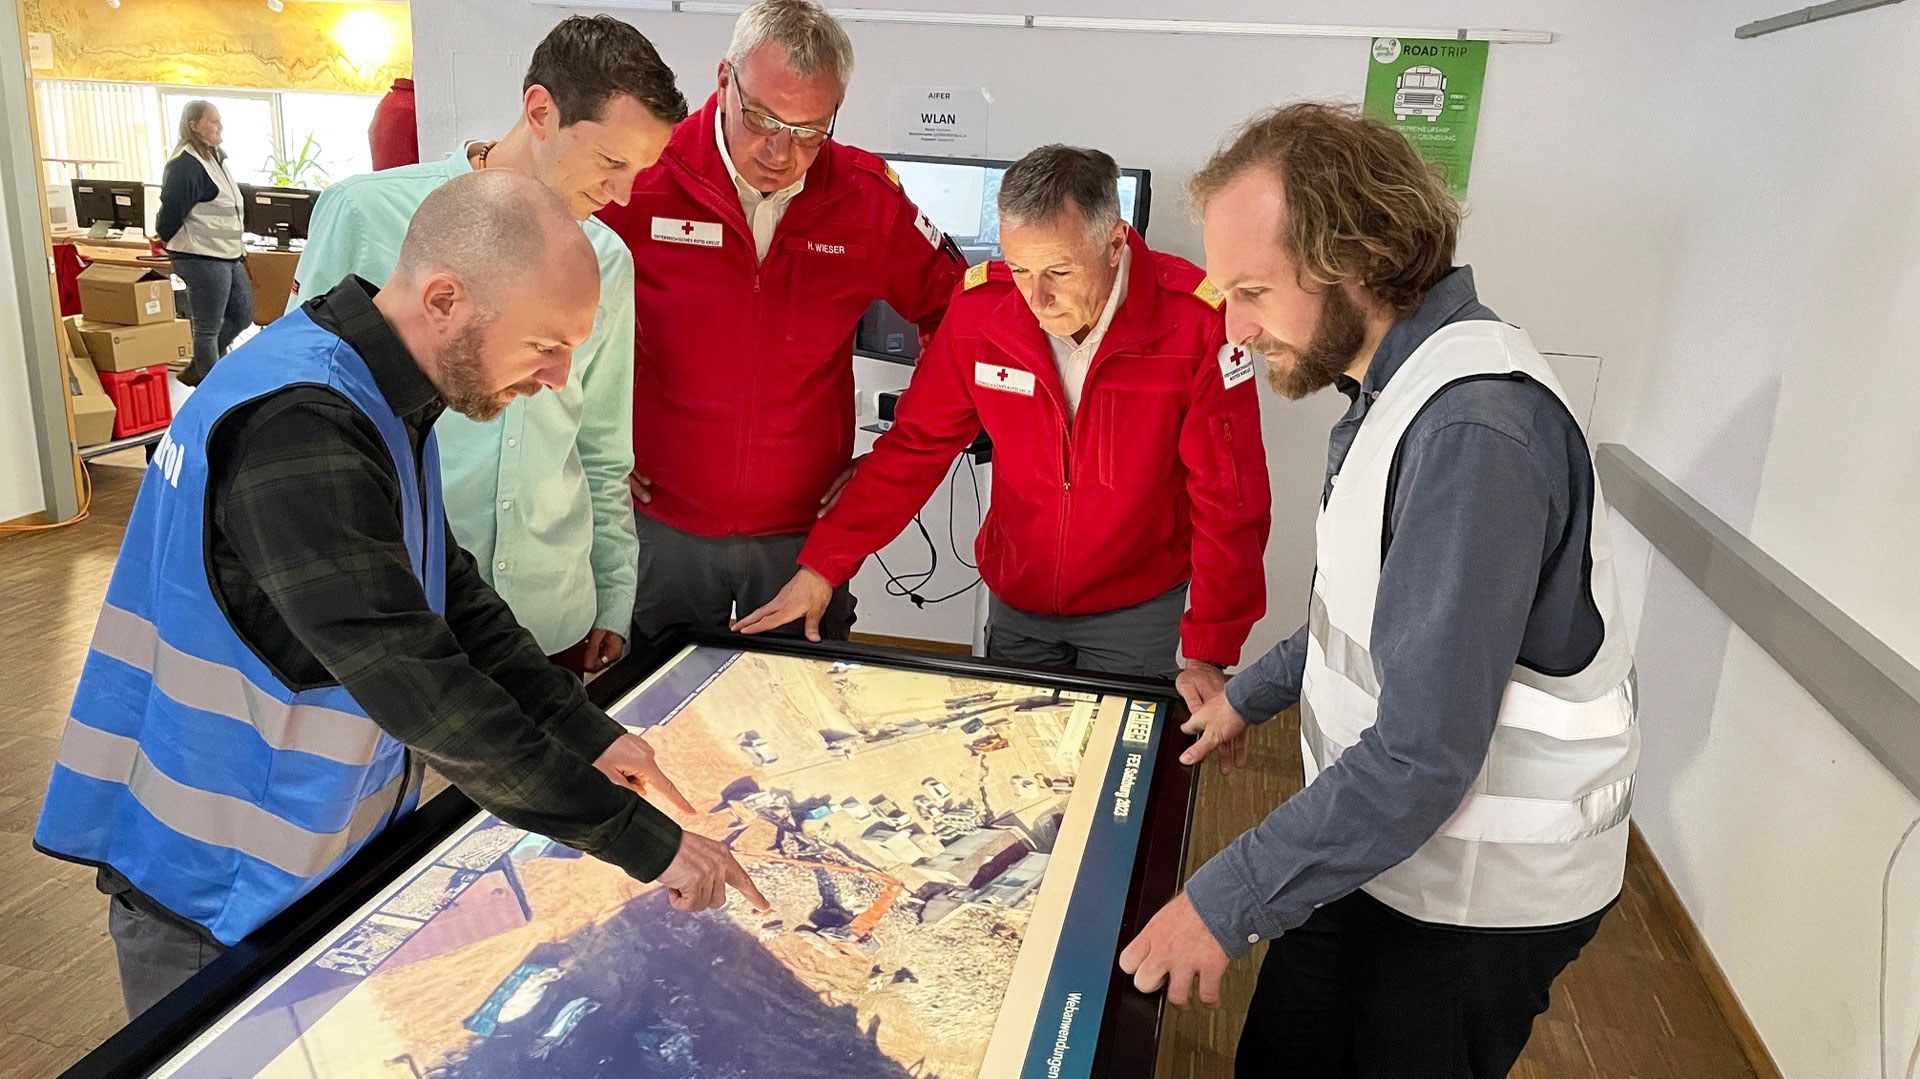 Internationale Katastrophenschutzübung in Salzburg. Dr. Marc Wieland (links) vom Earth Oberservation Center im DLR bespricht sich mit anderen Beteiligten der Katastrophenschutzübung in Salzburg.